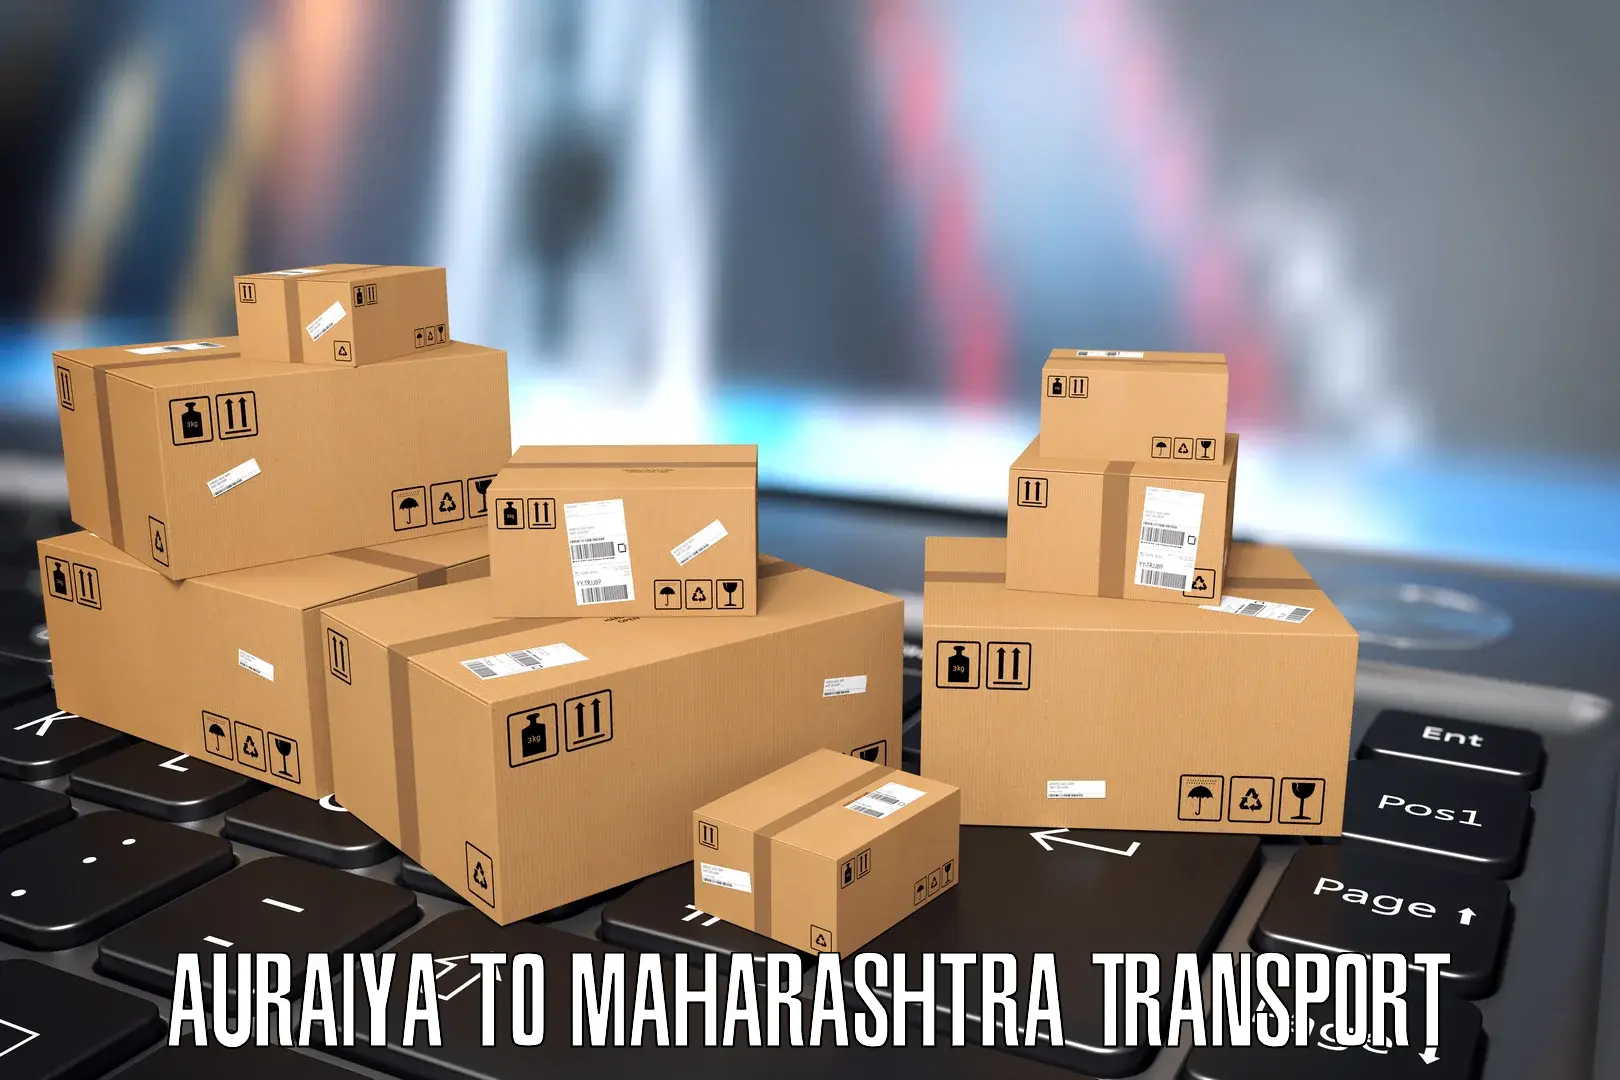 Nearest transport service Auraiya to Navi Mumbai